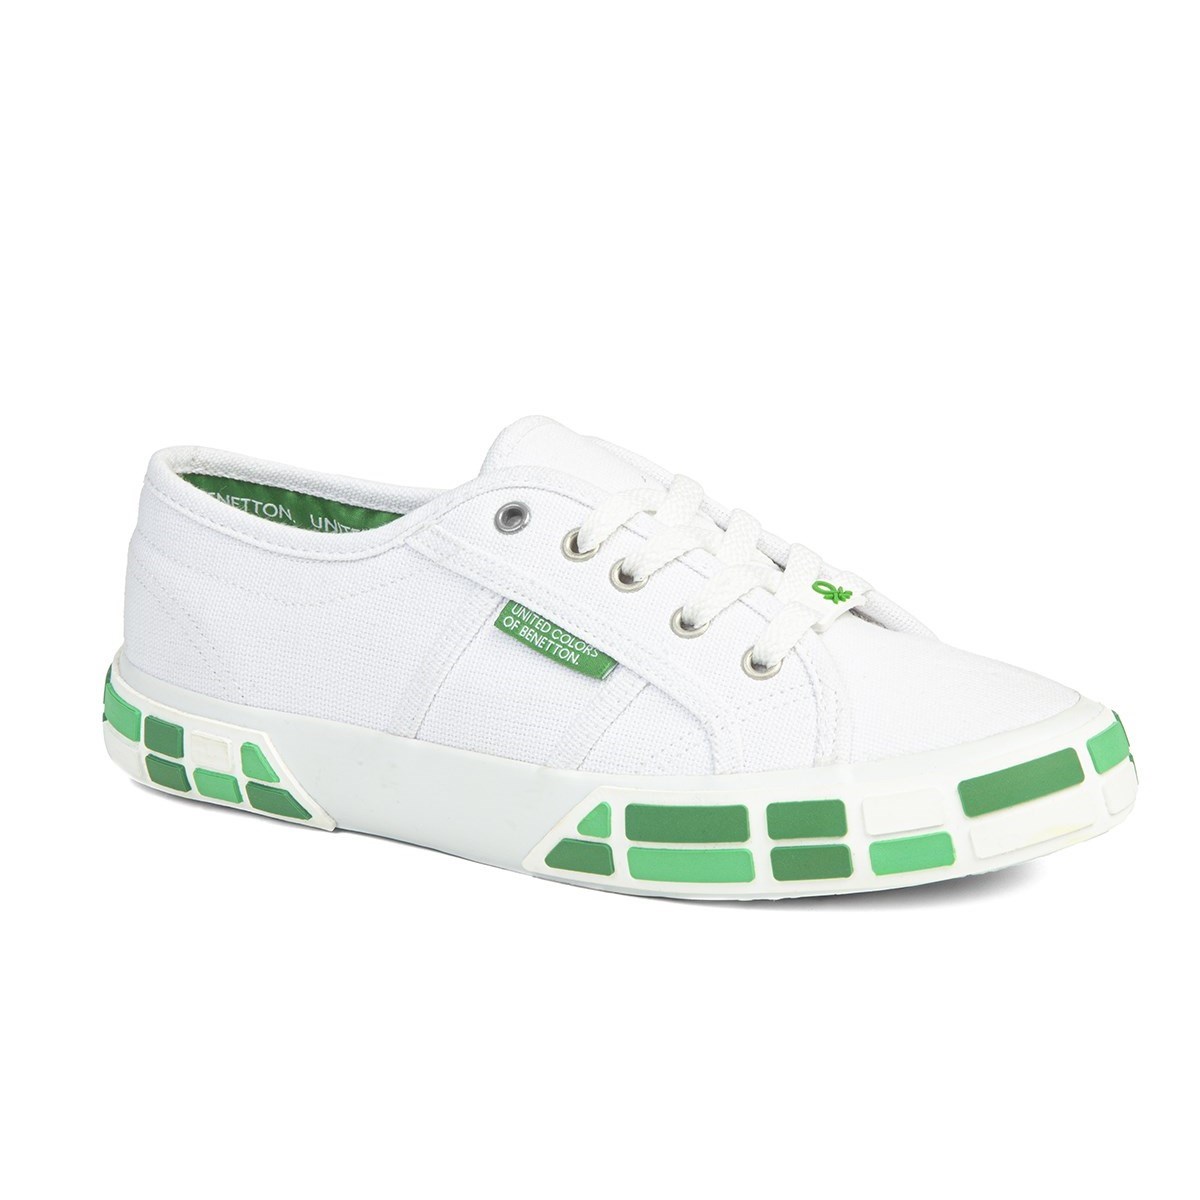 Benetton Kadın Ayakkabı BN-30691 Beyaz-Yeşil